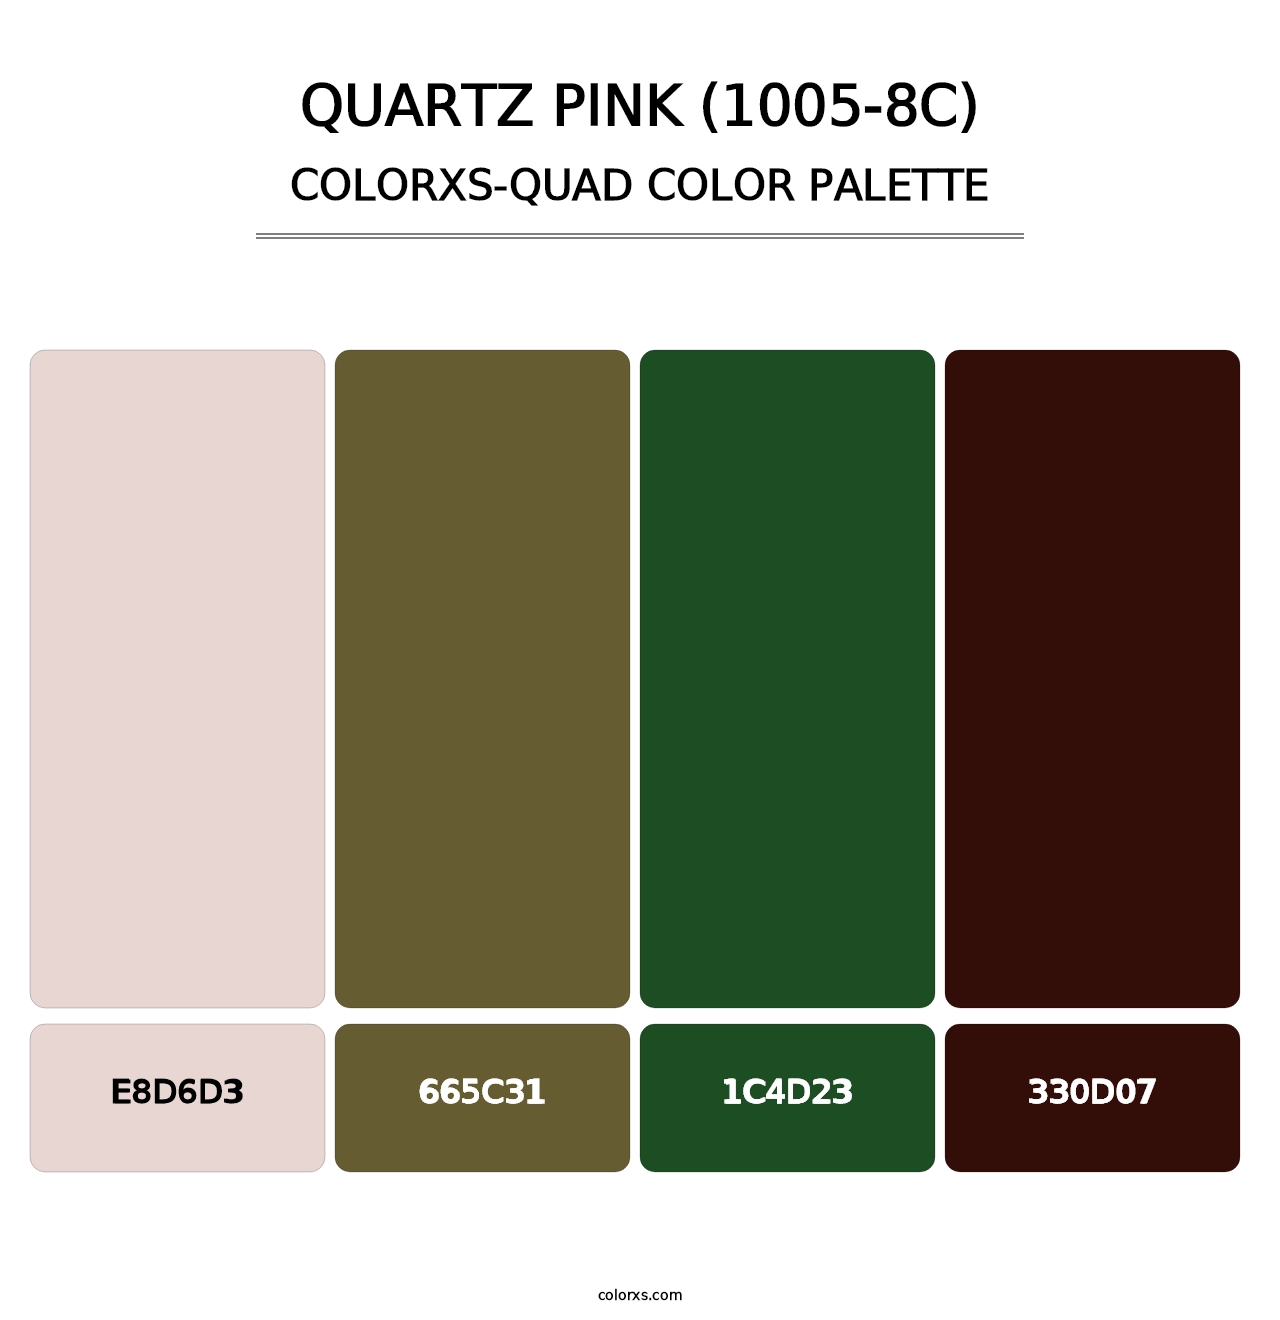 Quartz Pink (1005-8C) - Colorxs Quad Palette